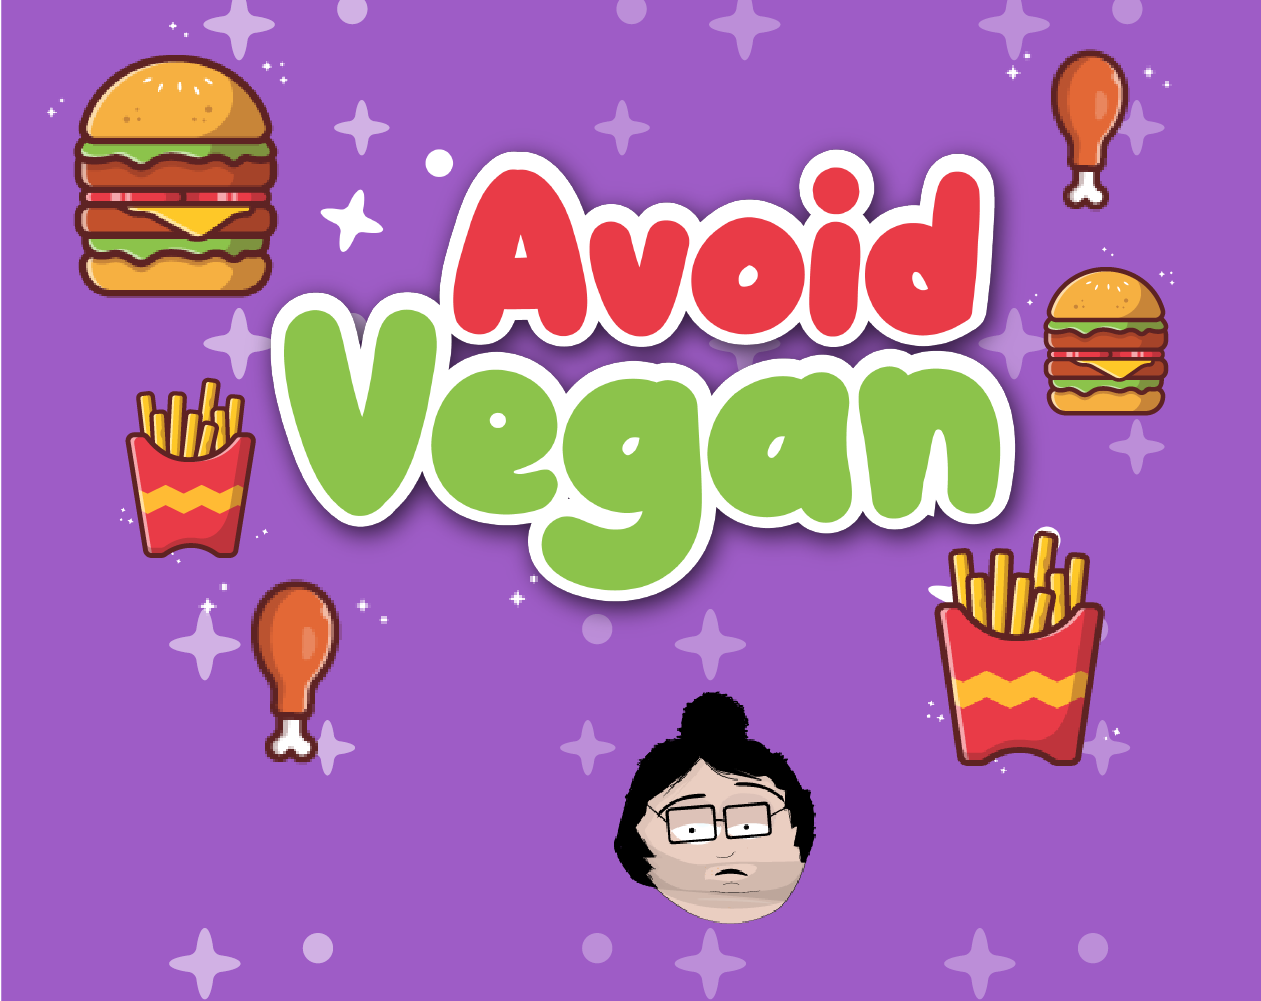 Avoid Vegan